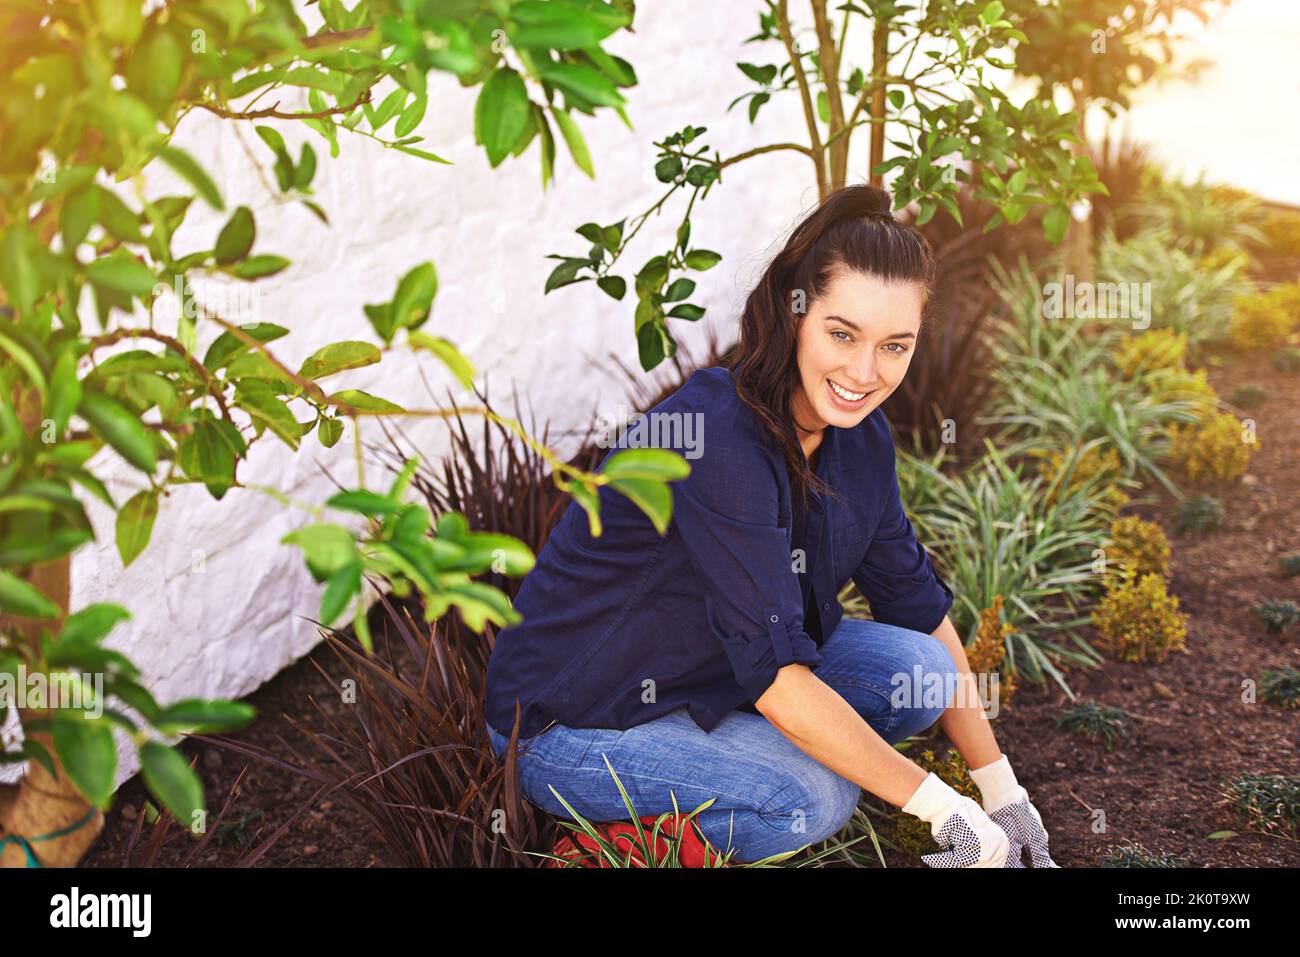 Mein Garten ist mein schönstes Meisterwerk. Porträt einer jungen Frau, die in ihrem Garten arbeitet. Stockfoto